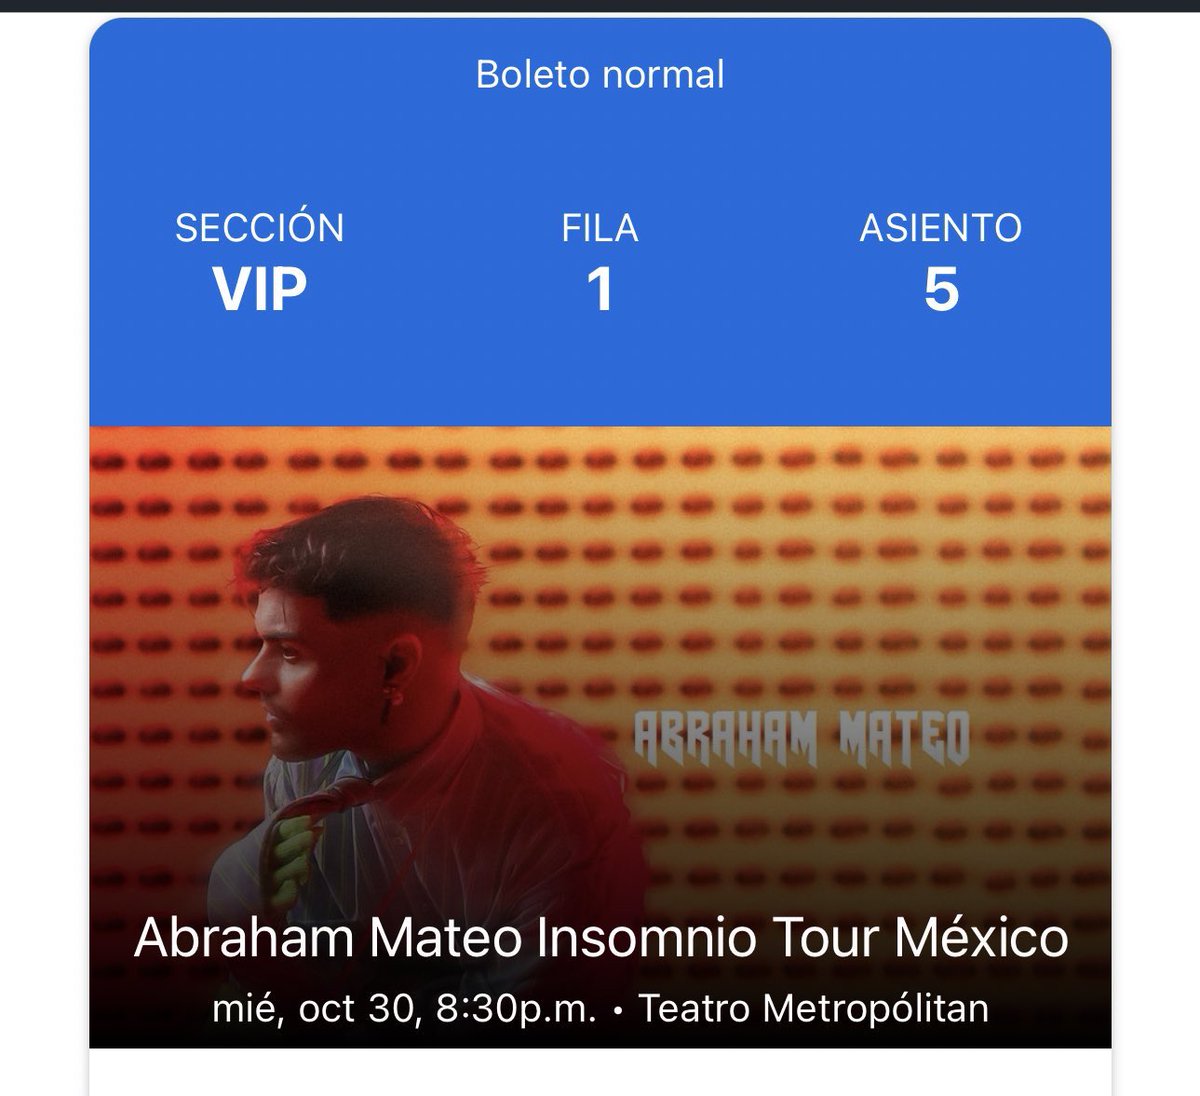 @AbrahamMateo se nos hizo tenerte por fin con tu gira en México 🩶 ya lloré poquito jajaja. Y como en los viejos tiempos nos vemos en primera fila 😭 como se que recuerdas verme en todos tus conciertos en México 🇲🇽 no podía fallar esta vez 😭✨🖤 te amo bye.